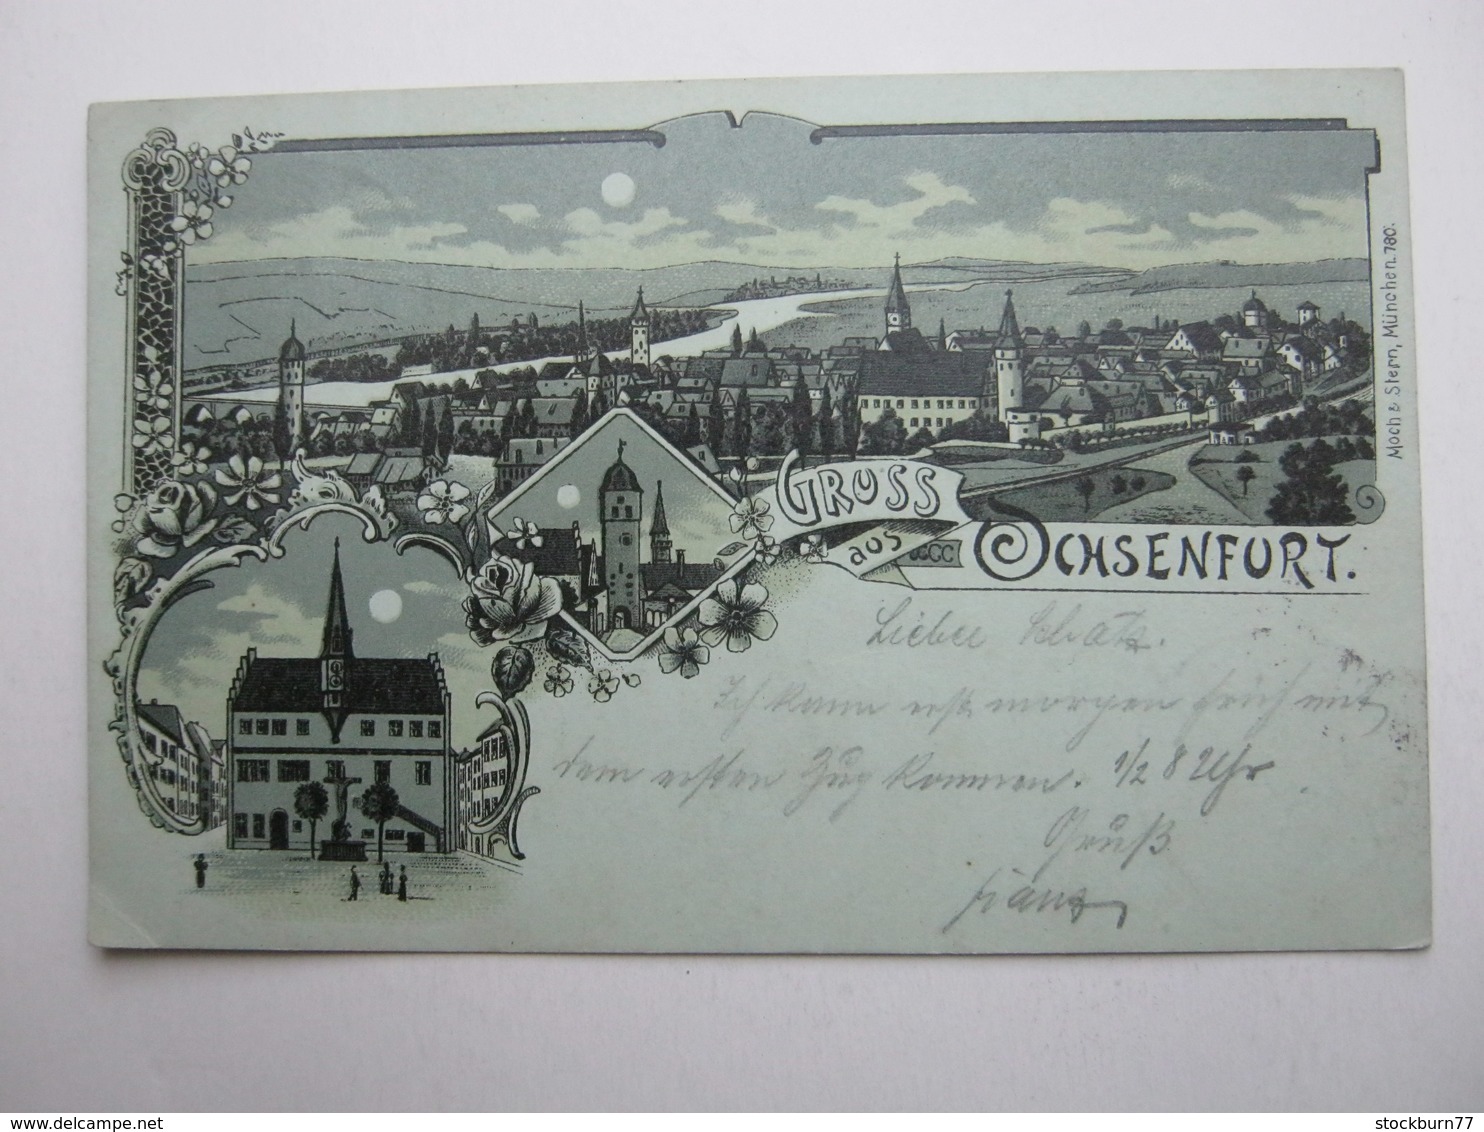 OCHSENFURT , Mondschein Litho, Schöne Karte Um 1899 - Ochsenfurt